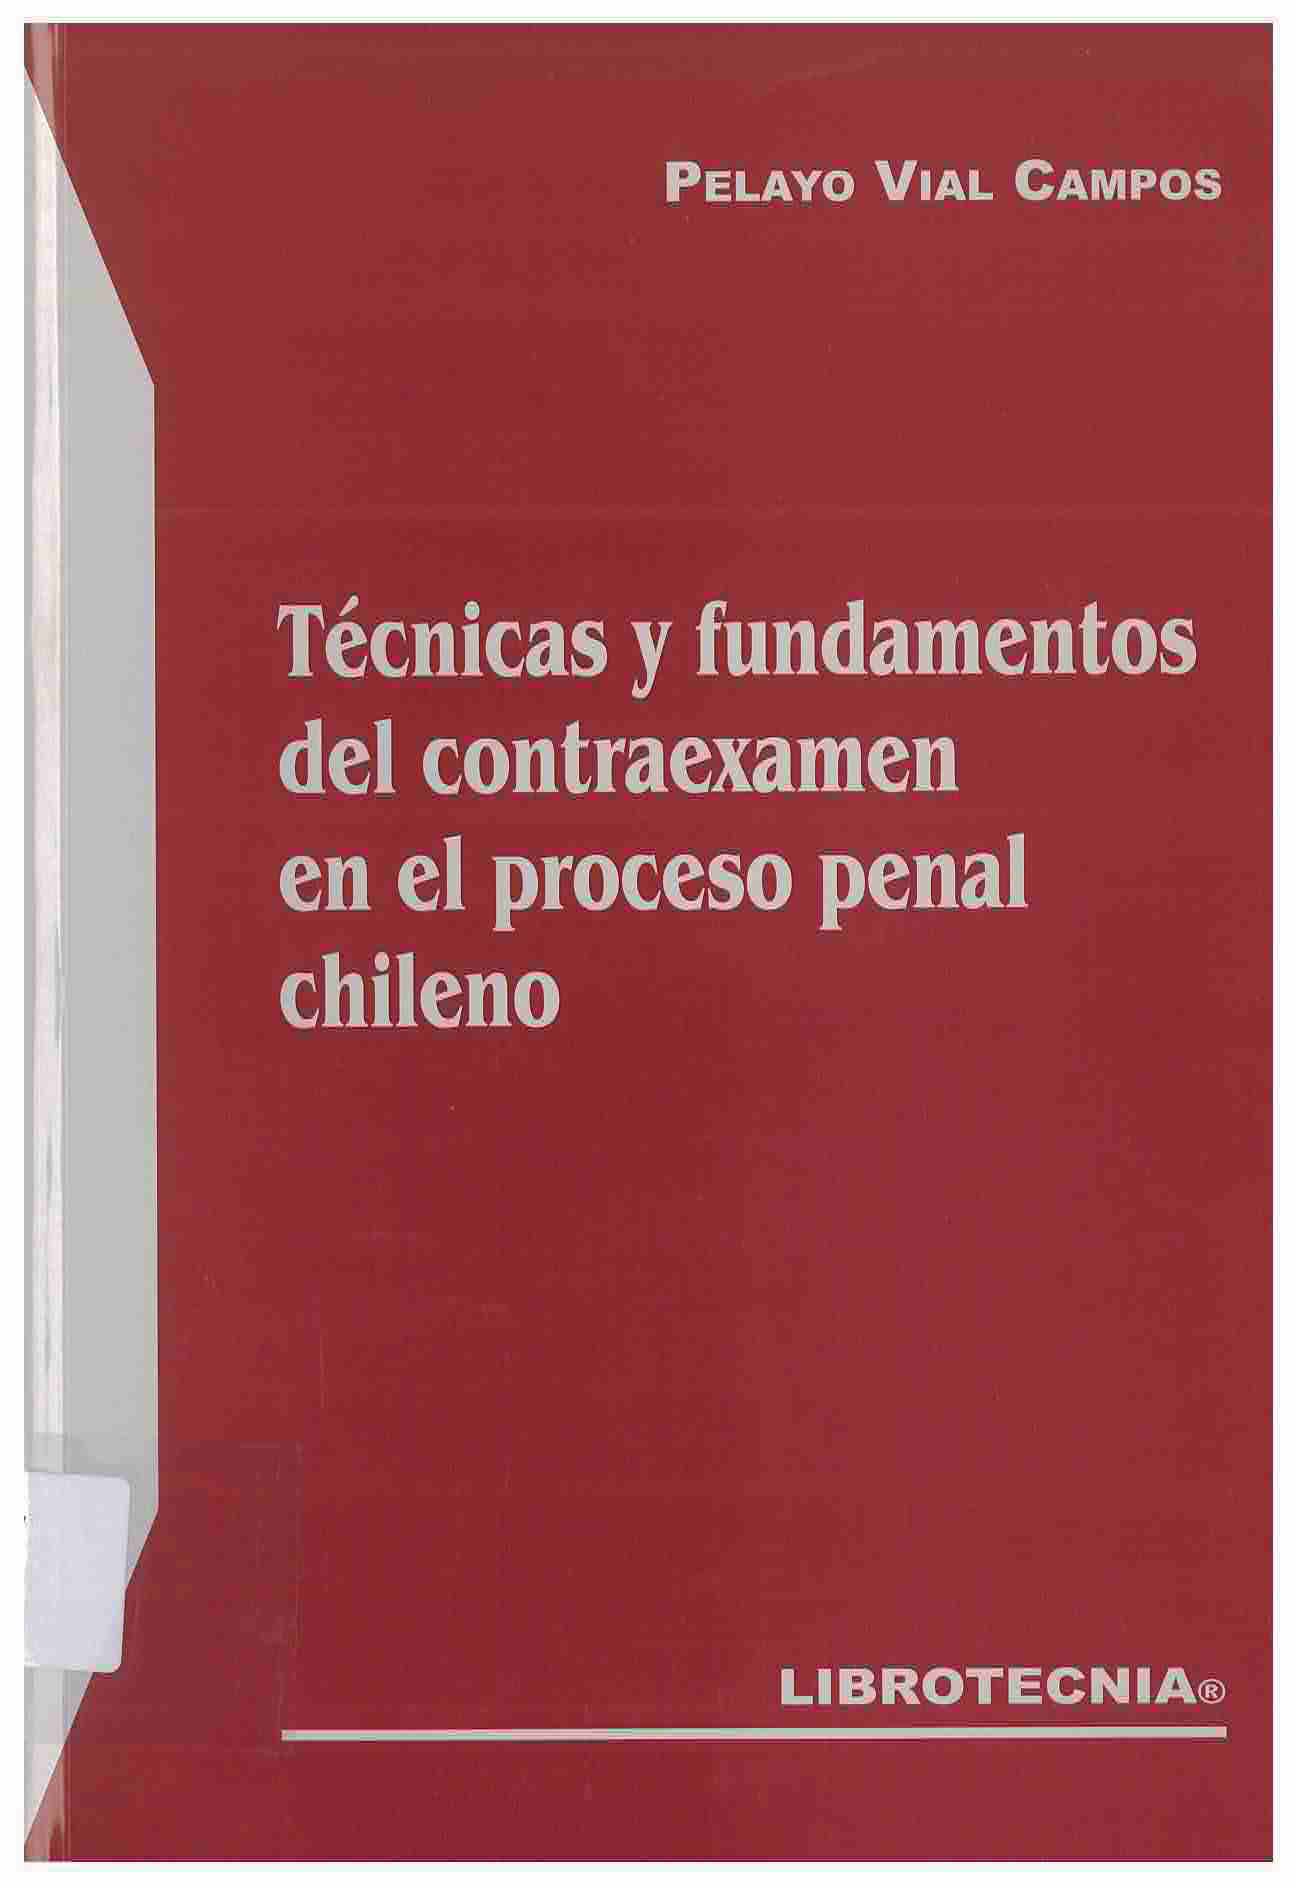 Técnicas y fundamentos del contraexamen en el proceso penal chileno